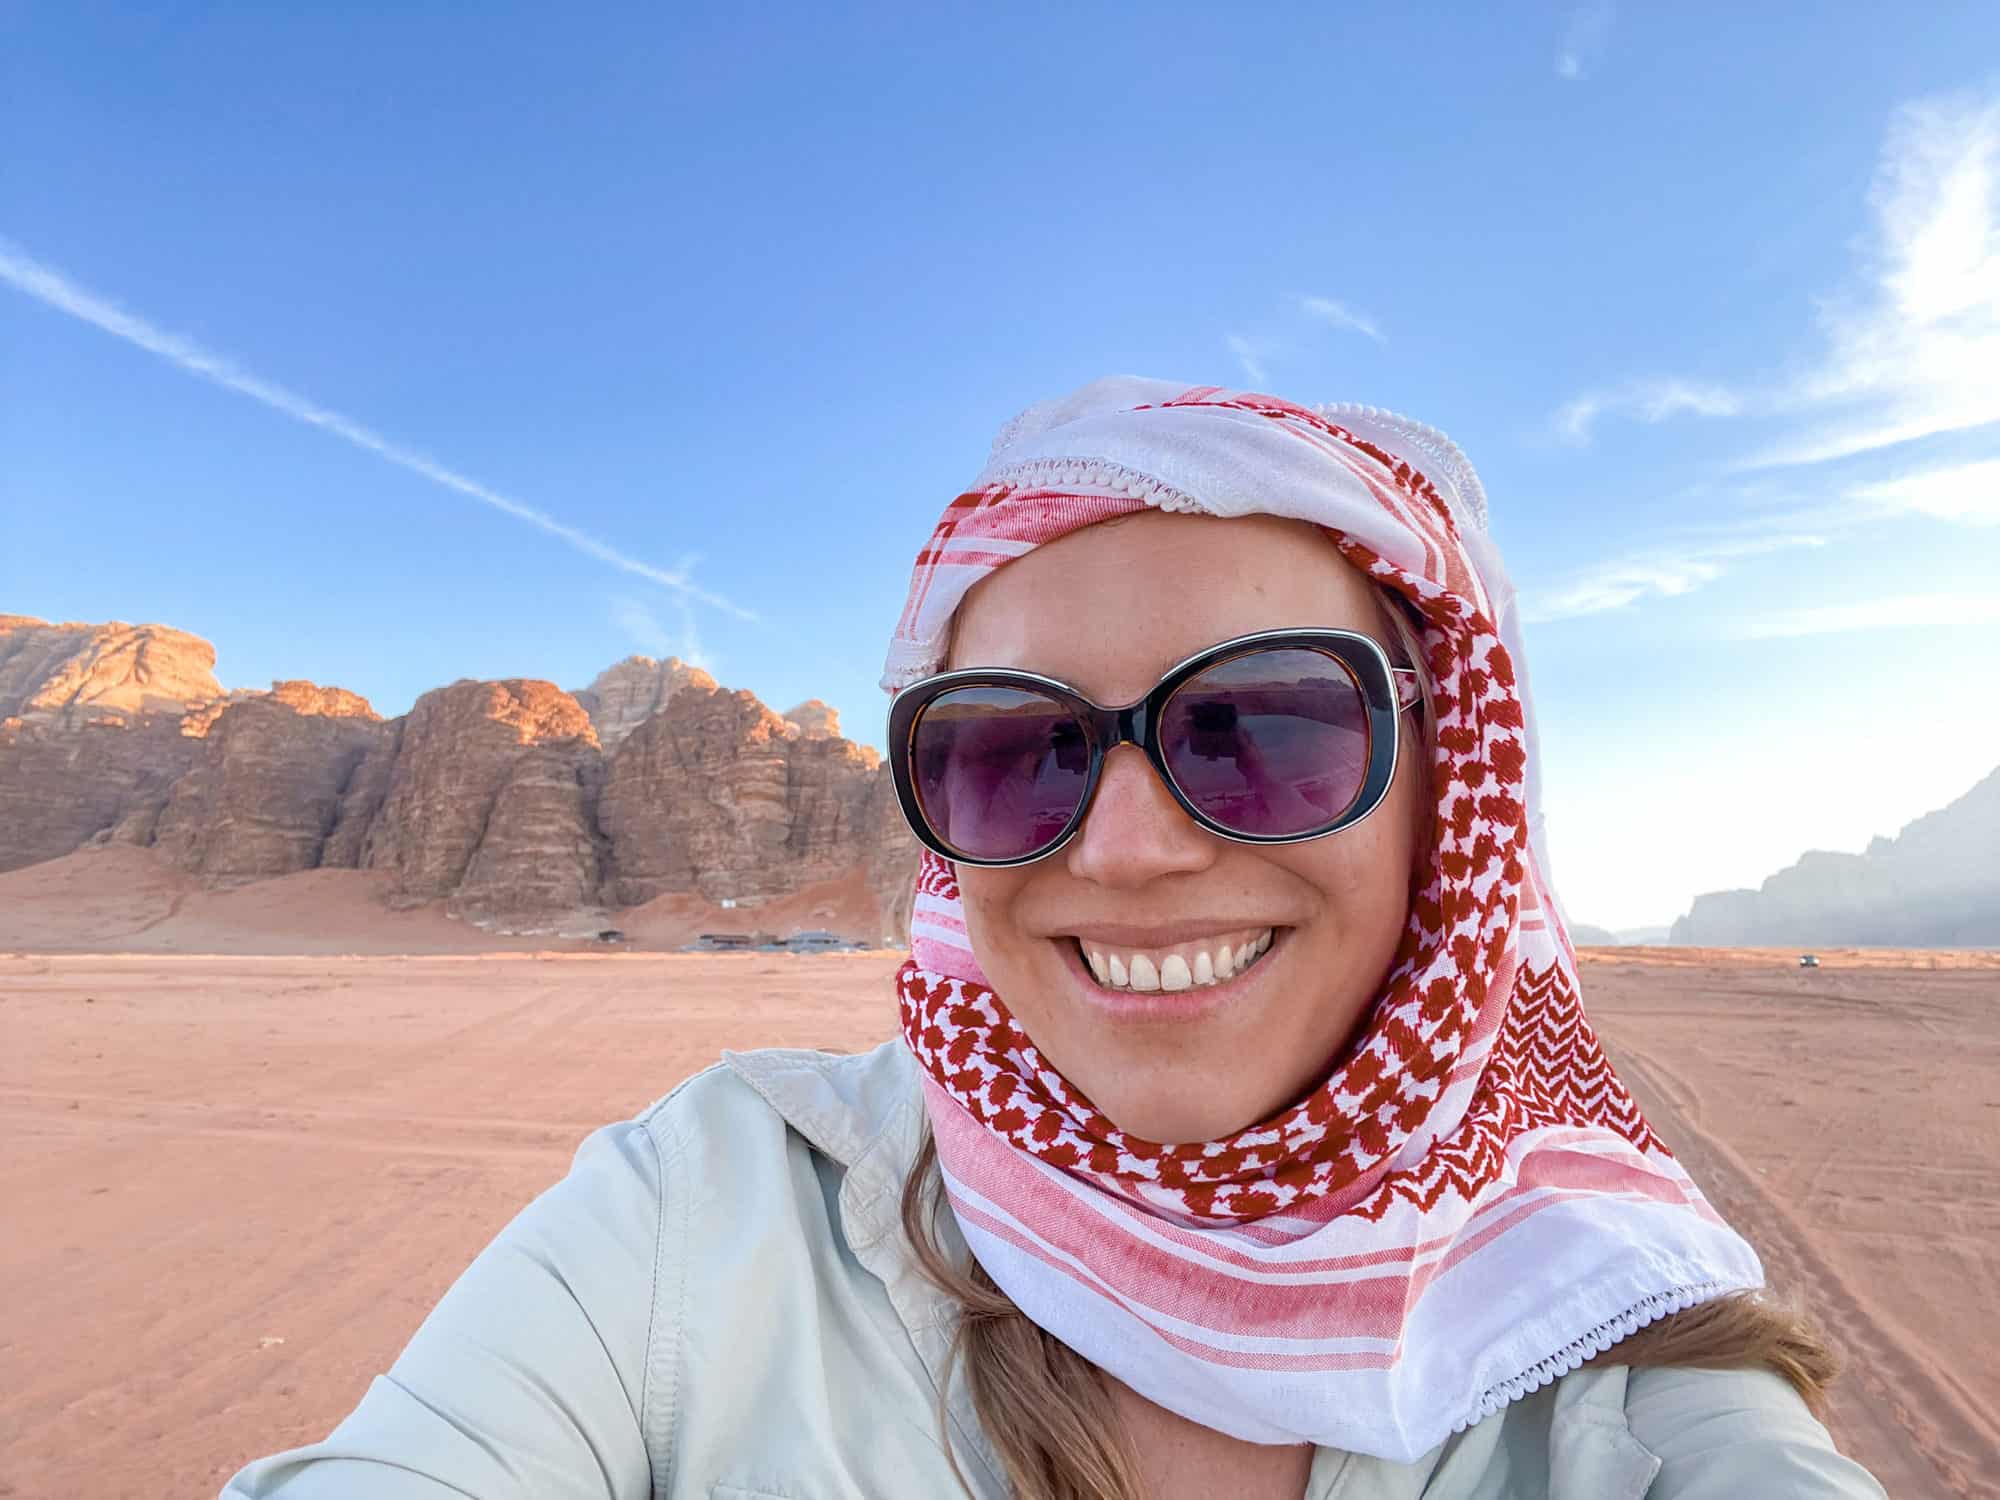 Jordan - Wadi Rum - Abigail King in keffiyeh